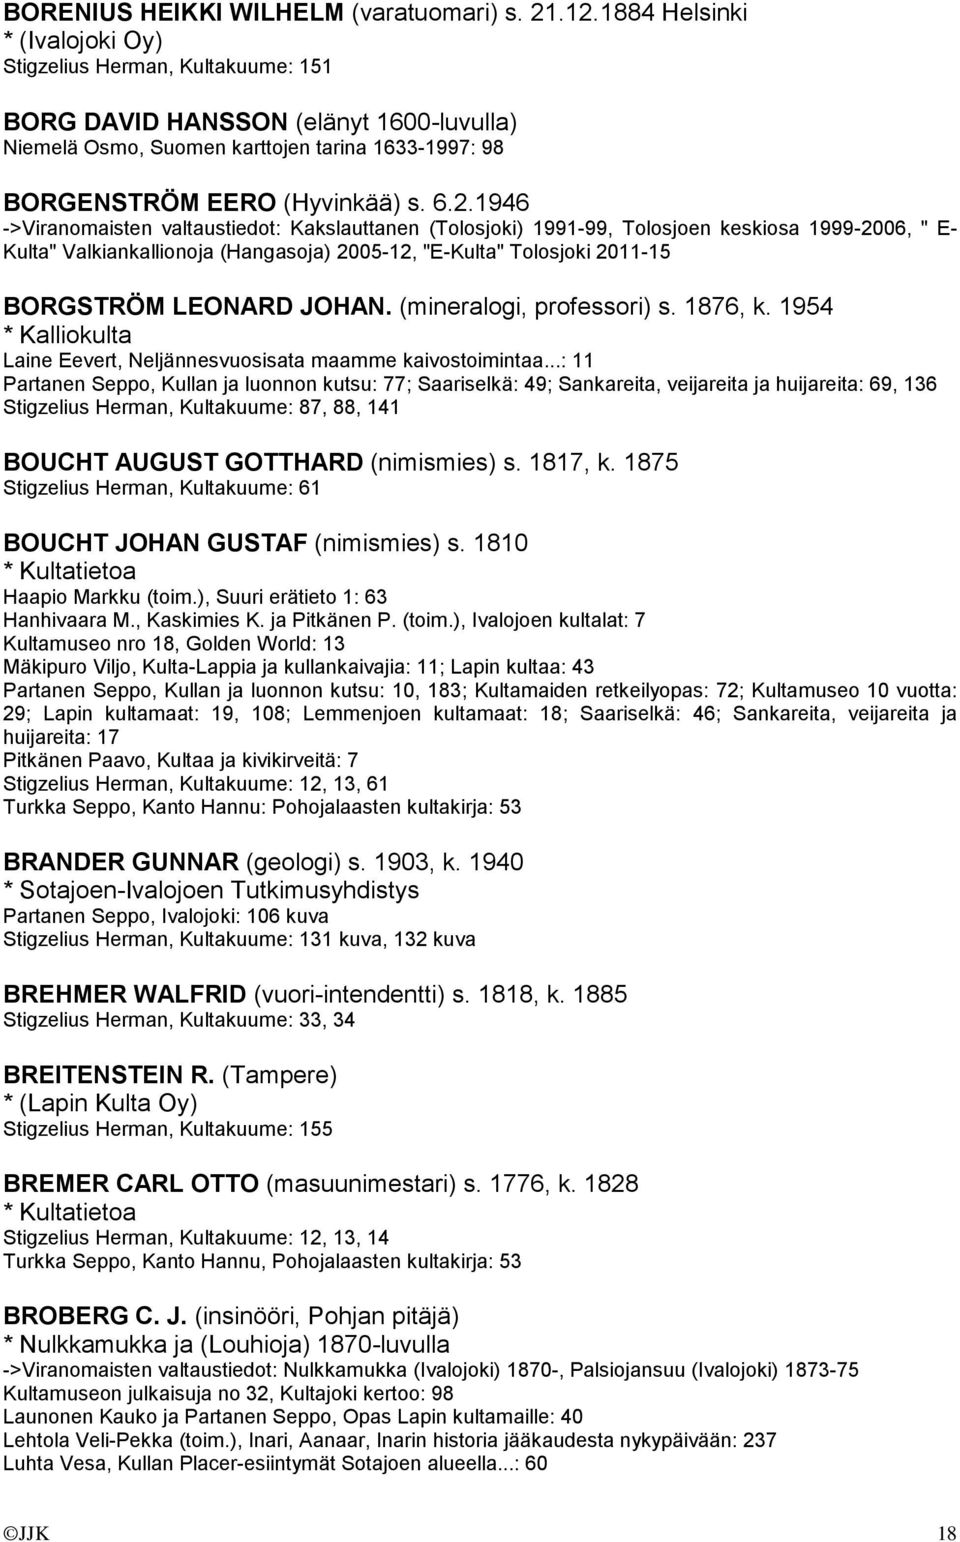 1946 ->Viranomaisten valtaustiedot: Kakslauttanen (Tolosjoki) 1991-99, Tolosjoen keskiosa 1999-2006, " E- Kulta" Valkiankallionoja (Hangasoja) 2005-12, "E-Kulta" Tolosjoki 2011-15 BORGSTRÖM LEONARD